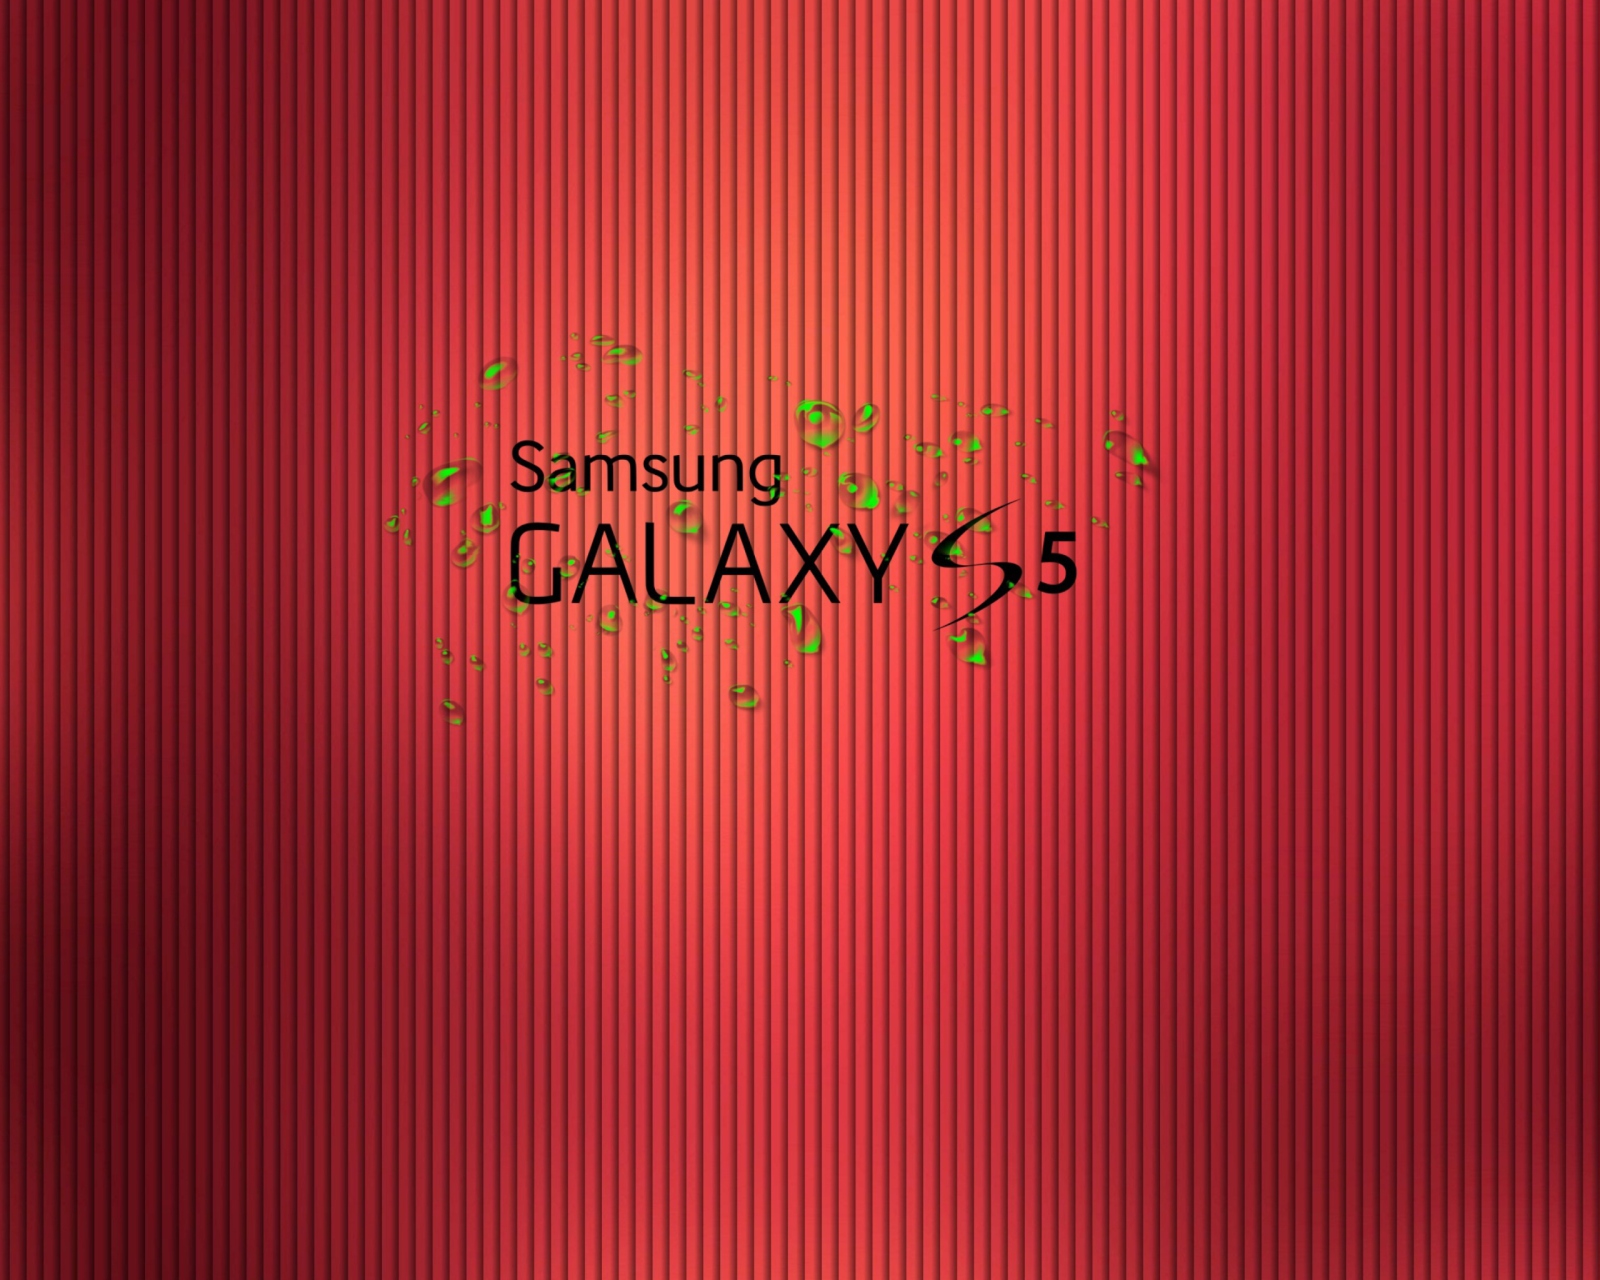 Galaxy S5 wallpaper 1600x1280